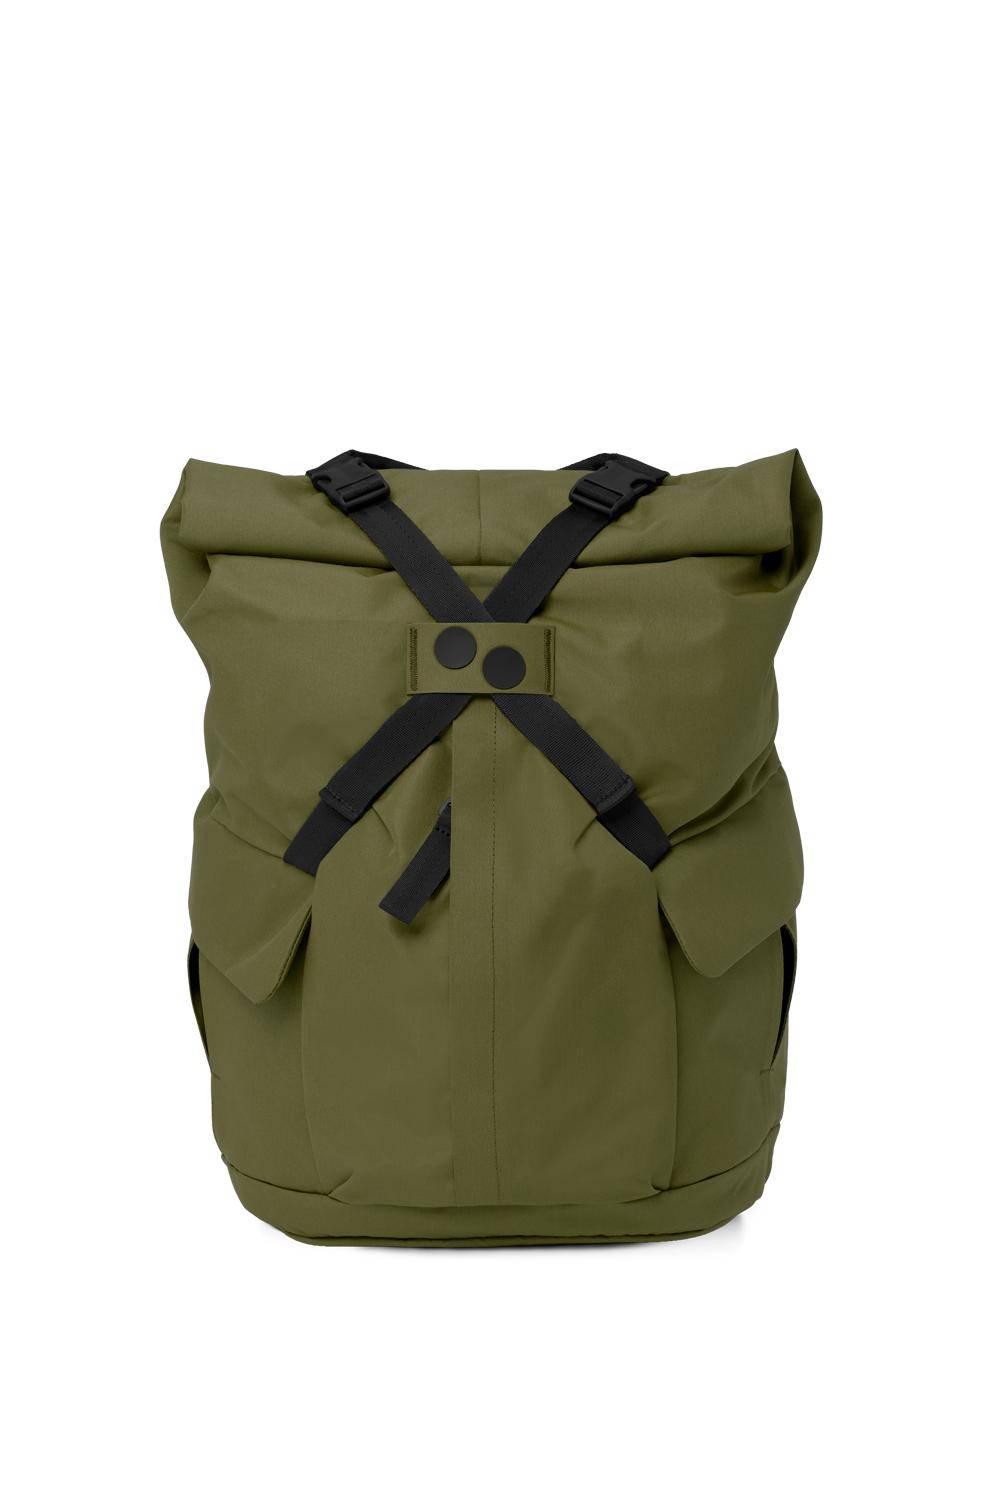 Kross Backpack Solid Olive